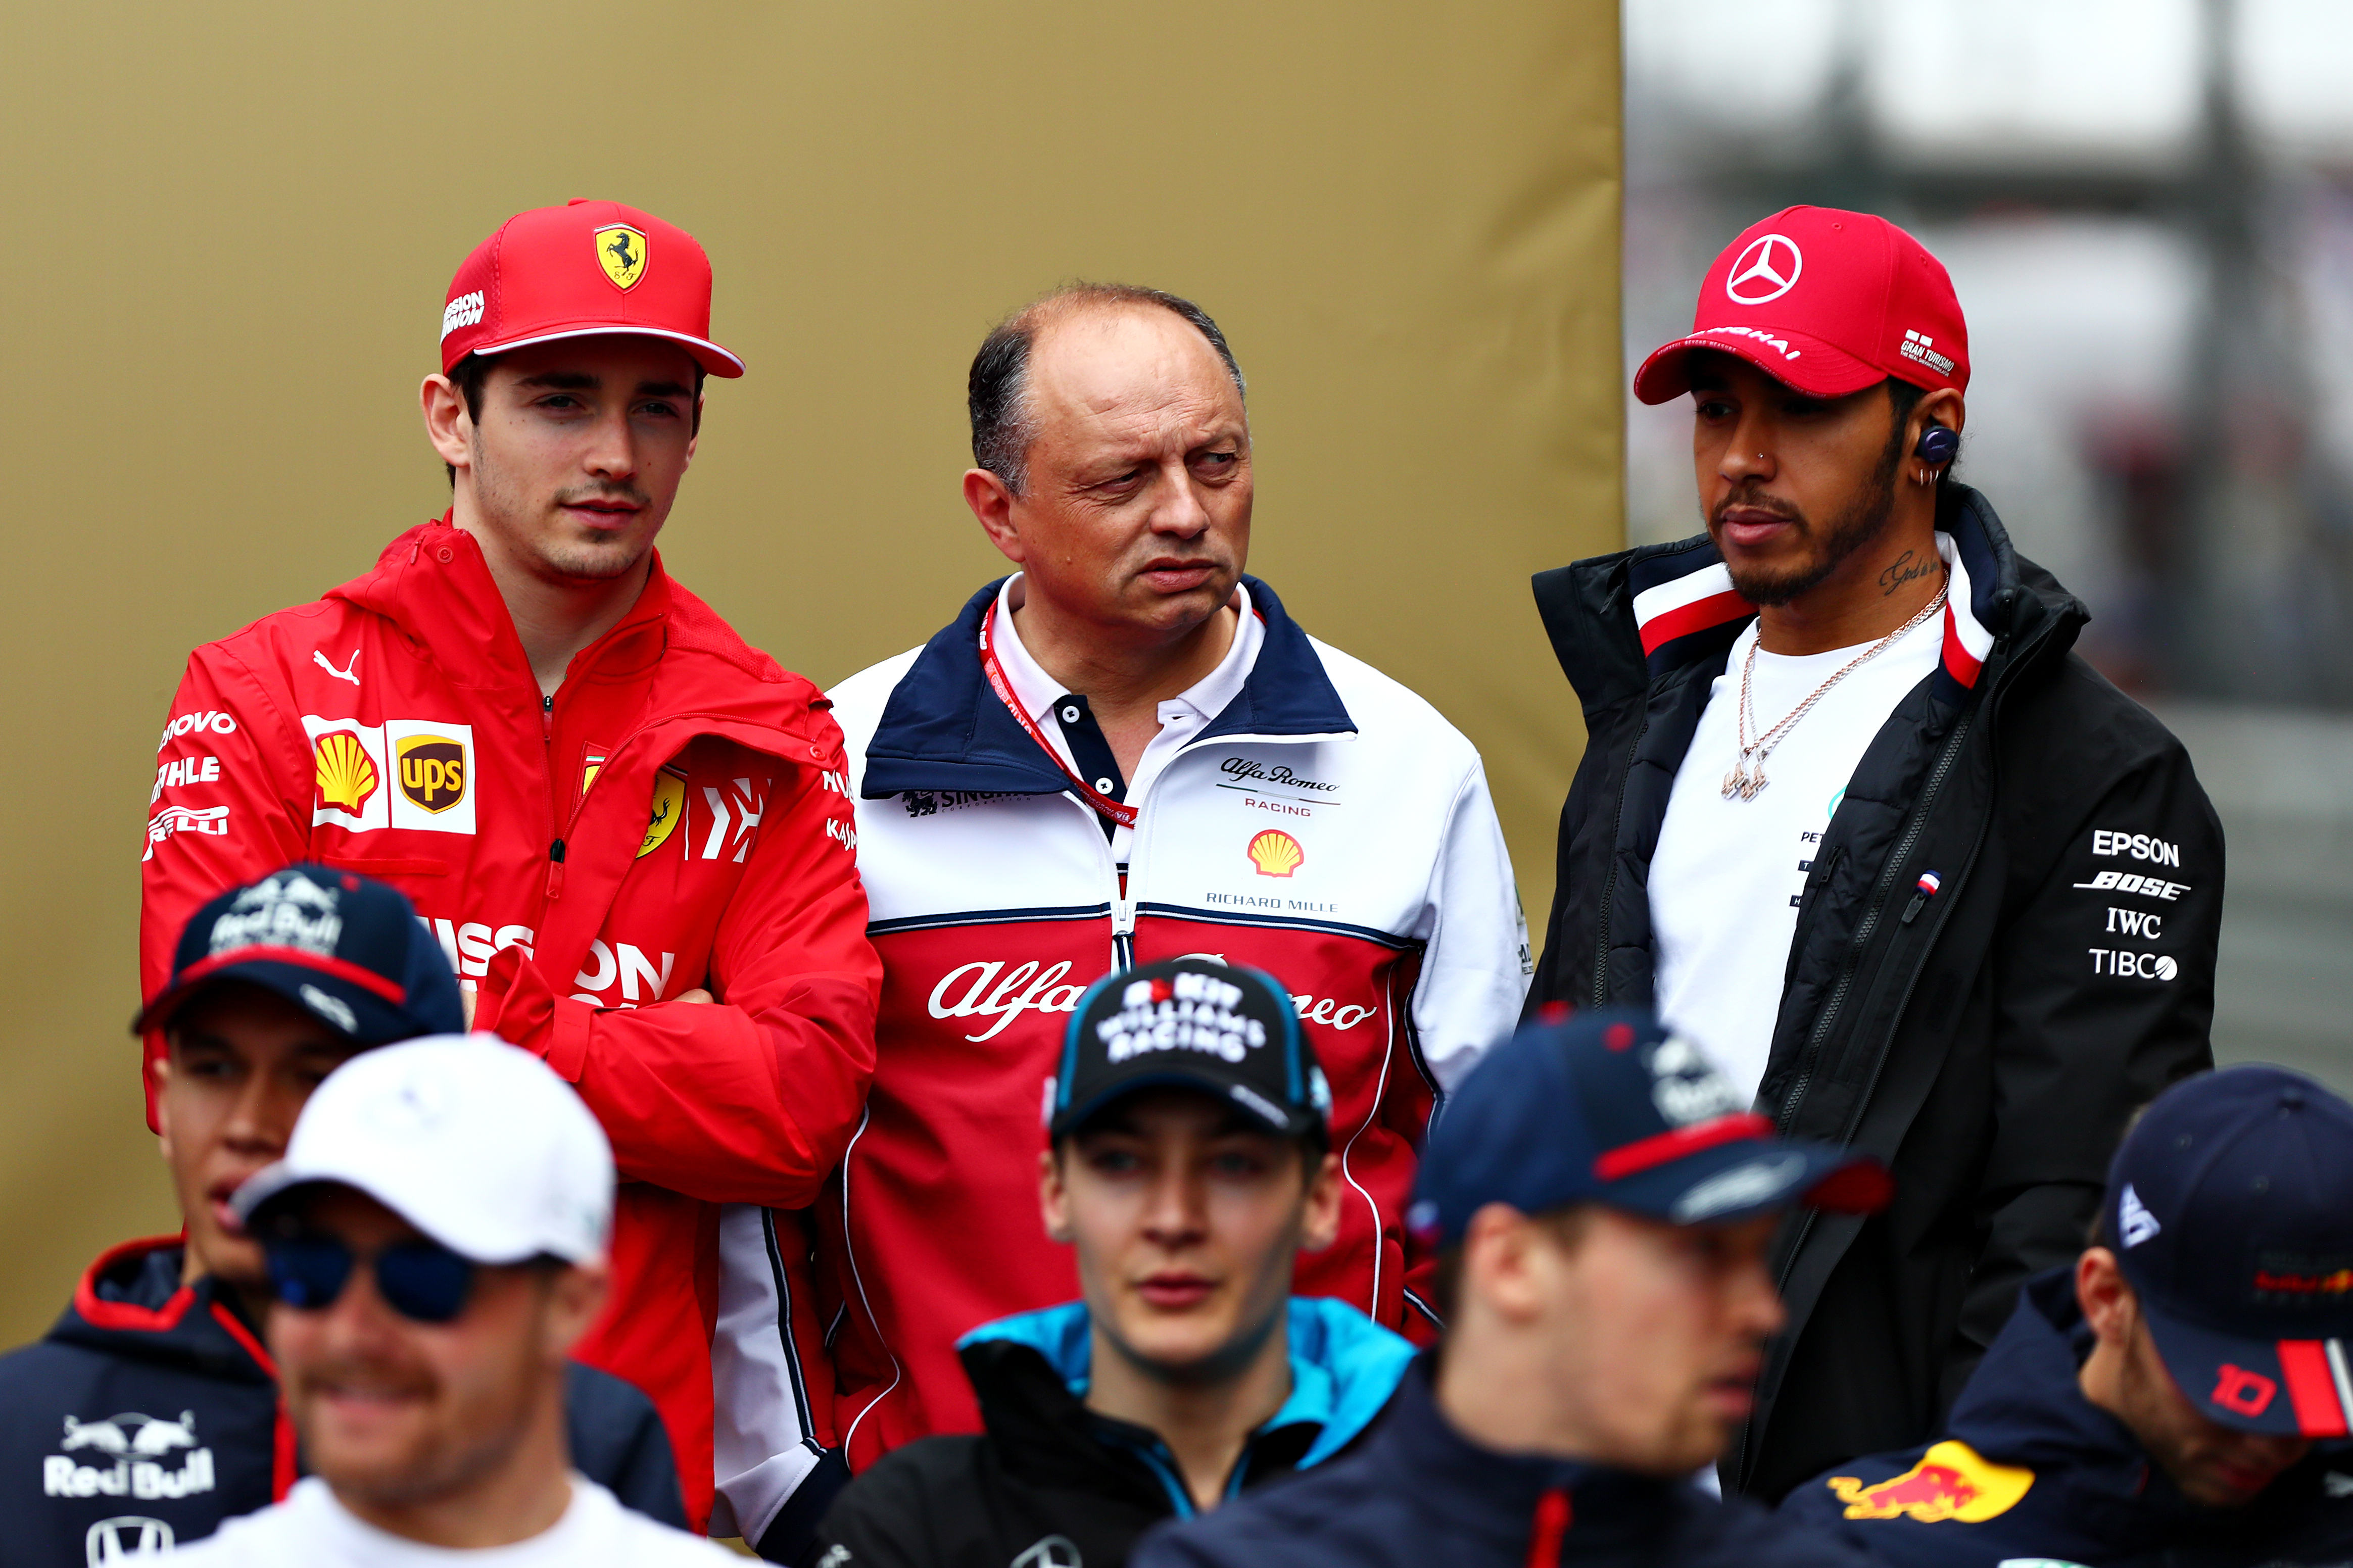 Auch Leclerc soll vor der Unterzeichnung eines neuen Ferrari-Vertrags keine Ahnung von dem Wechsel gehabt haben